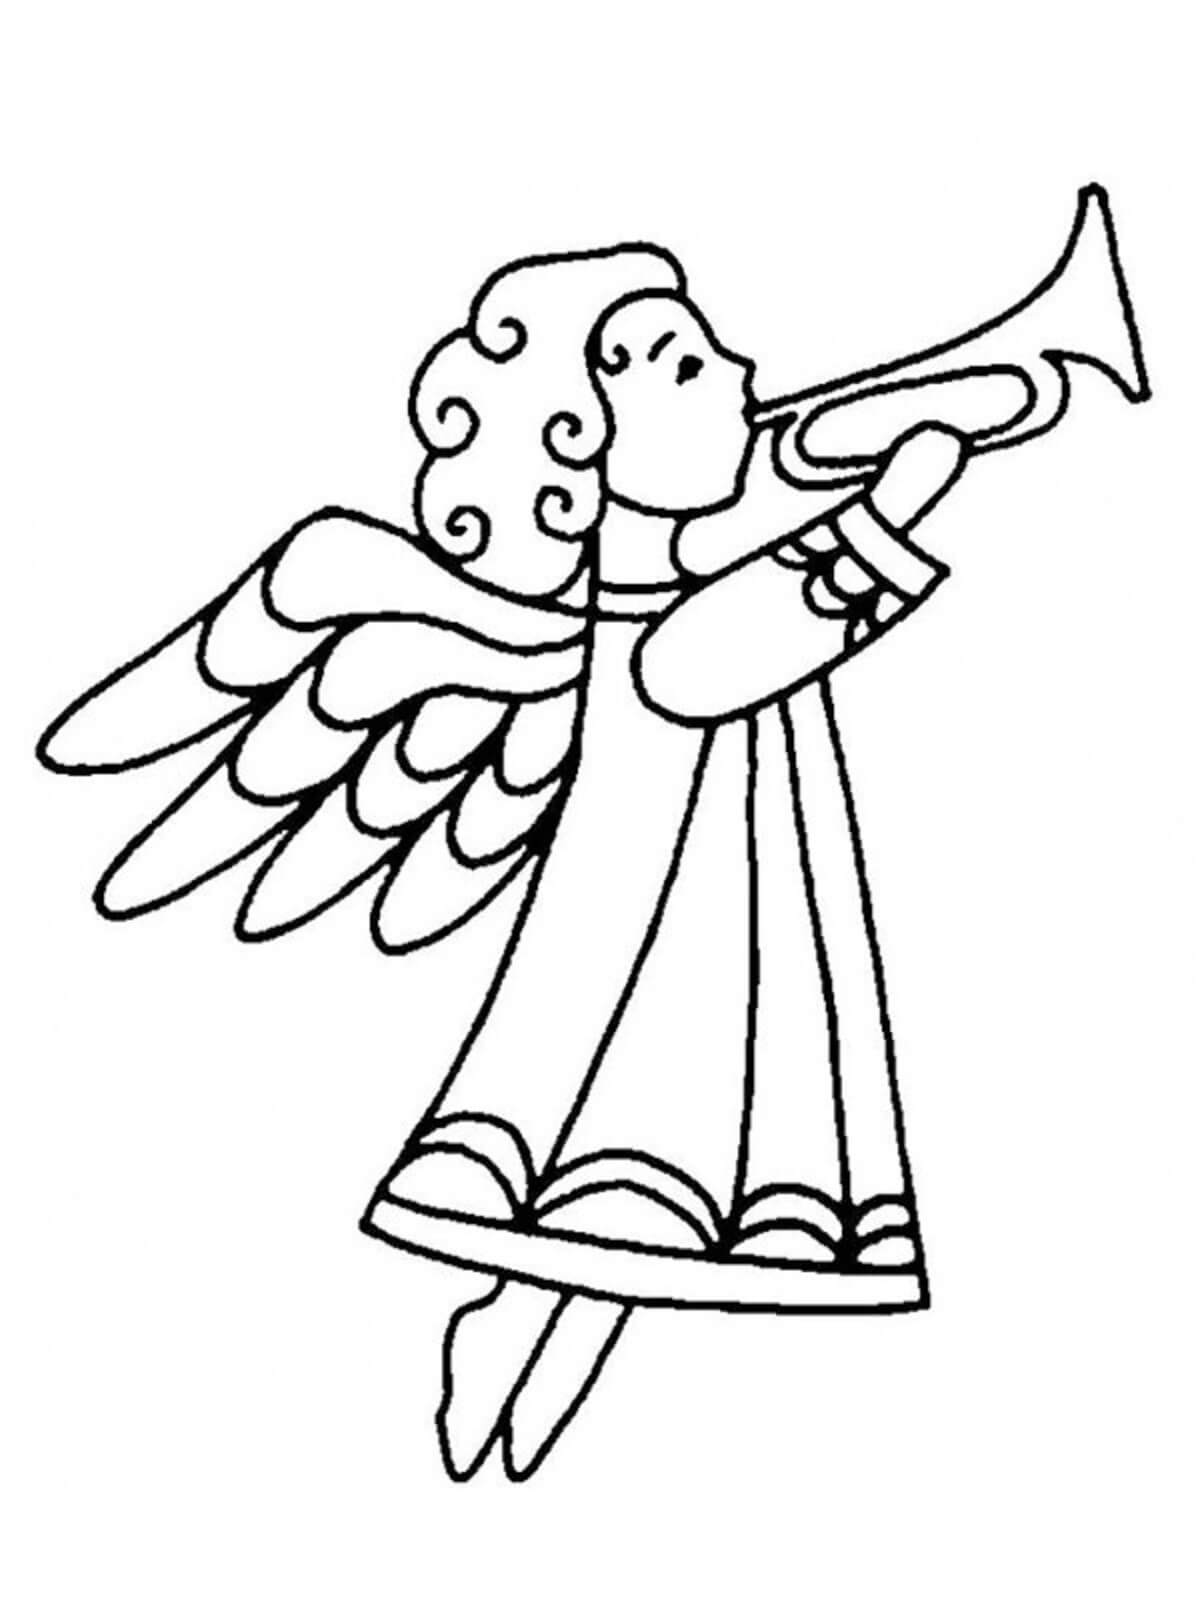 Der Engel der Zeichnung Spielt die Trompete